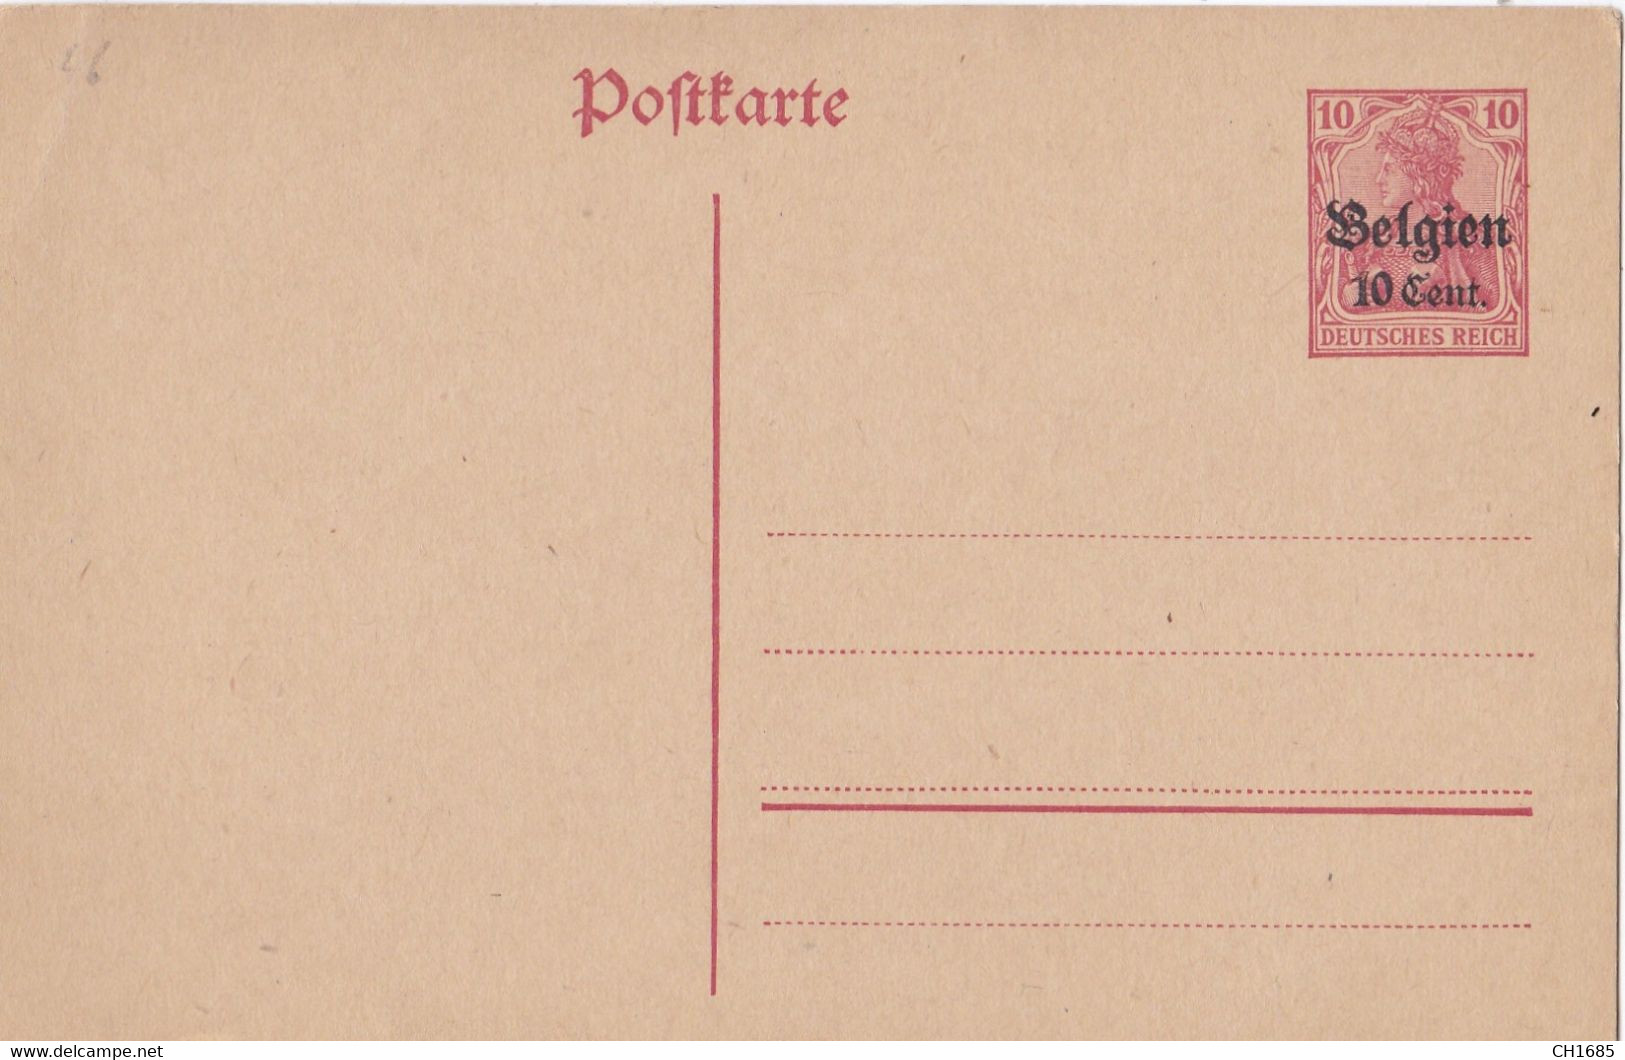 BELGIQUE : Occupation Allemande Entier Postal Neuf Avec Surcharge 10 Cents - German Occupation